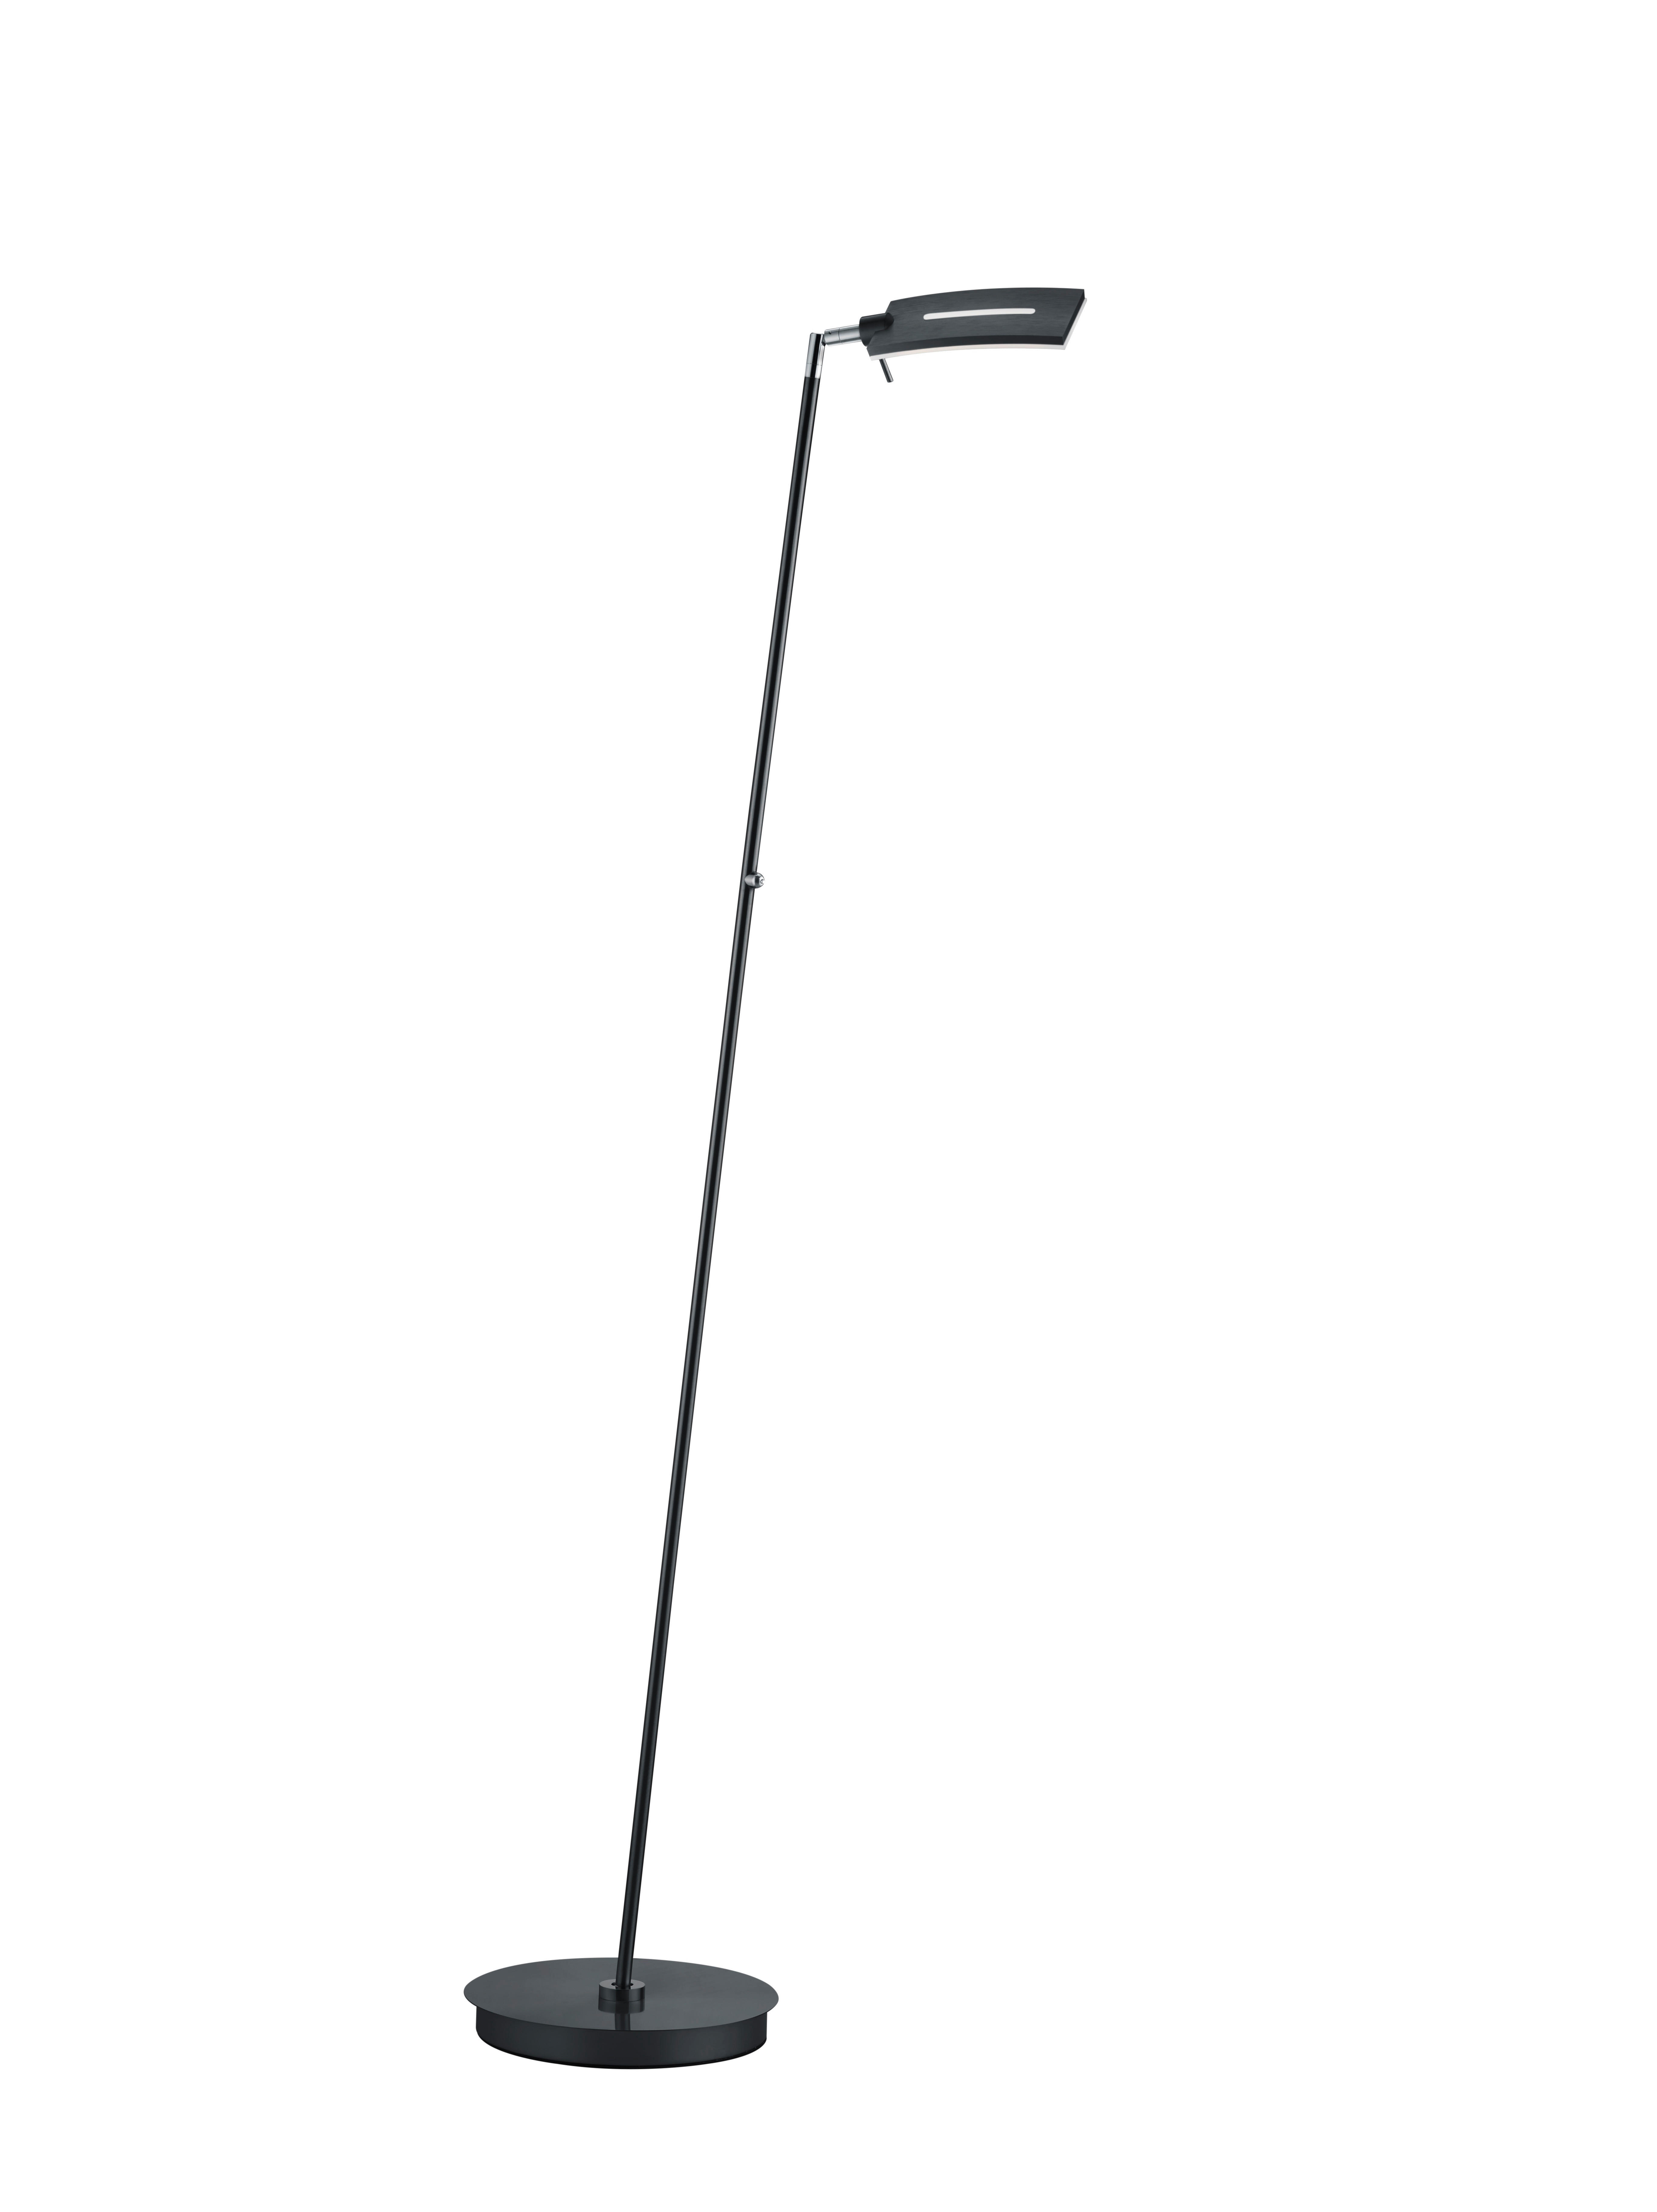 LED-STEHLEUCHTE SPLITT  - Schwarz/Weiß, Design, Kunststoff/Metall (140cm)